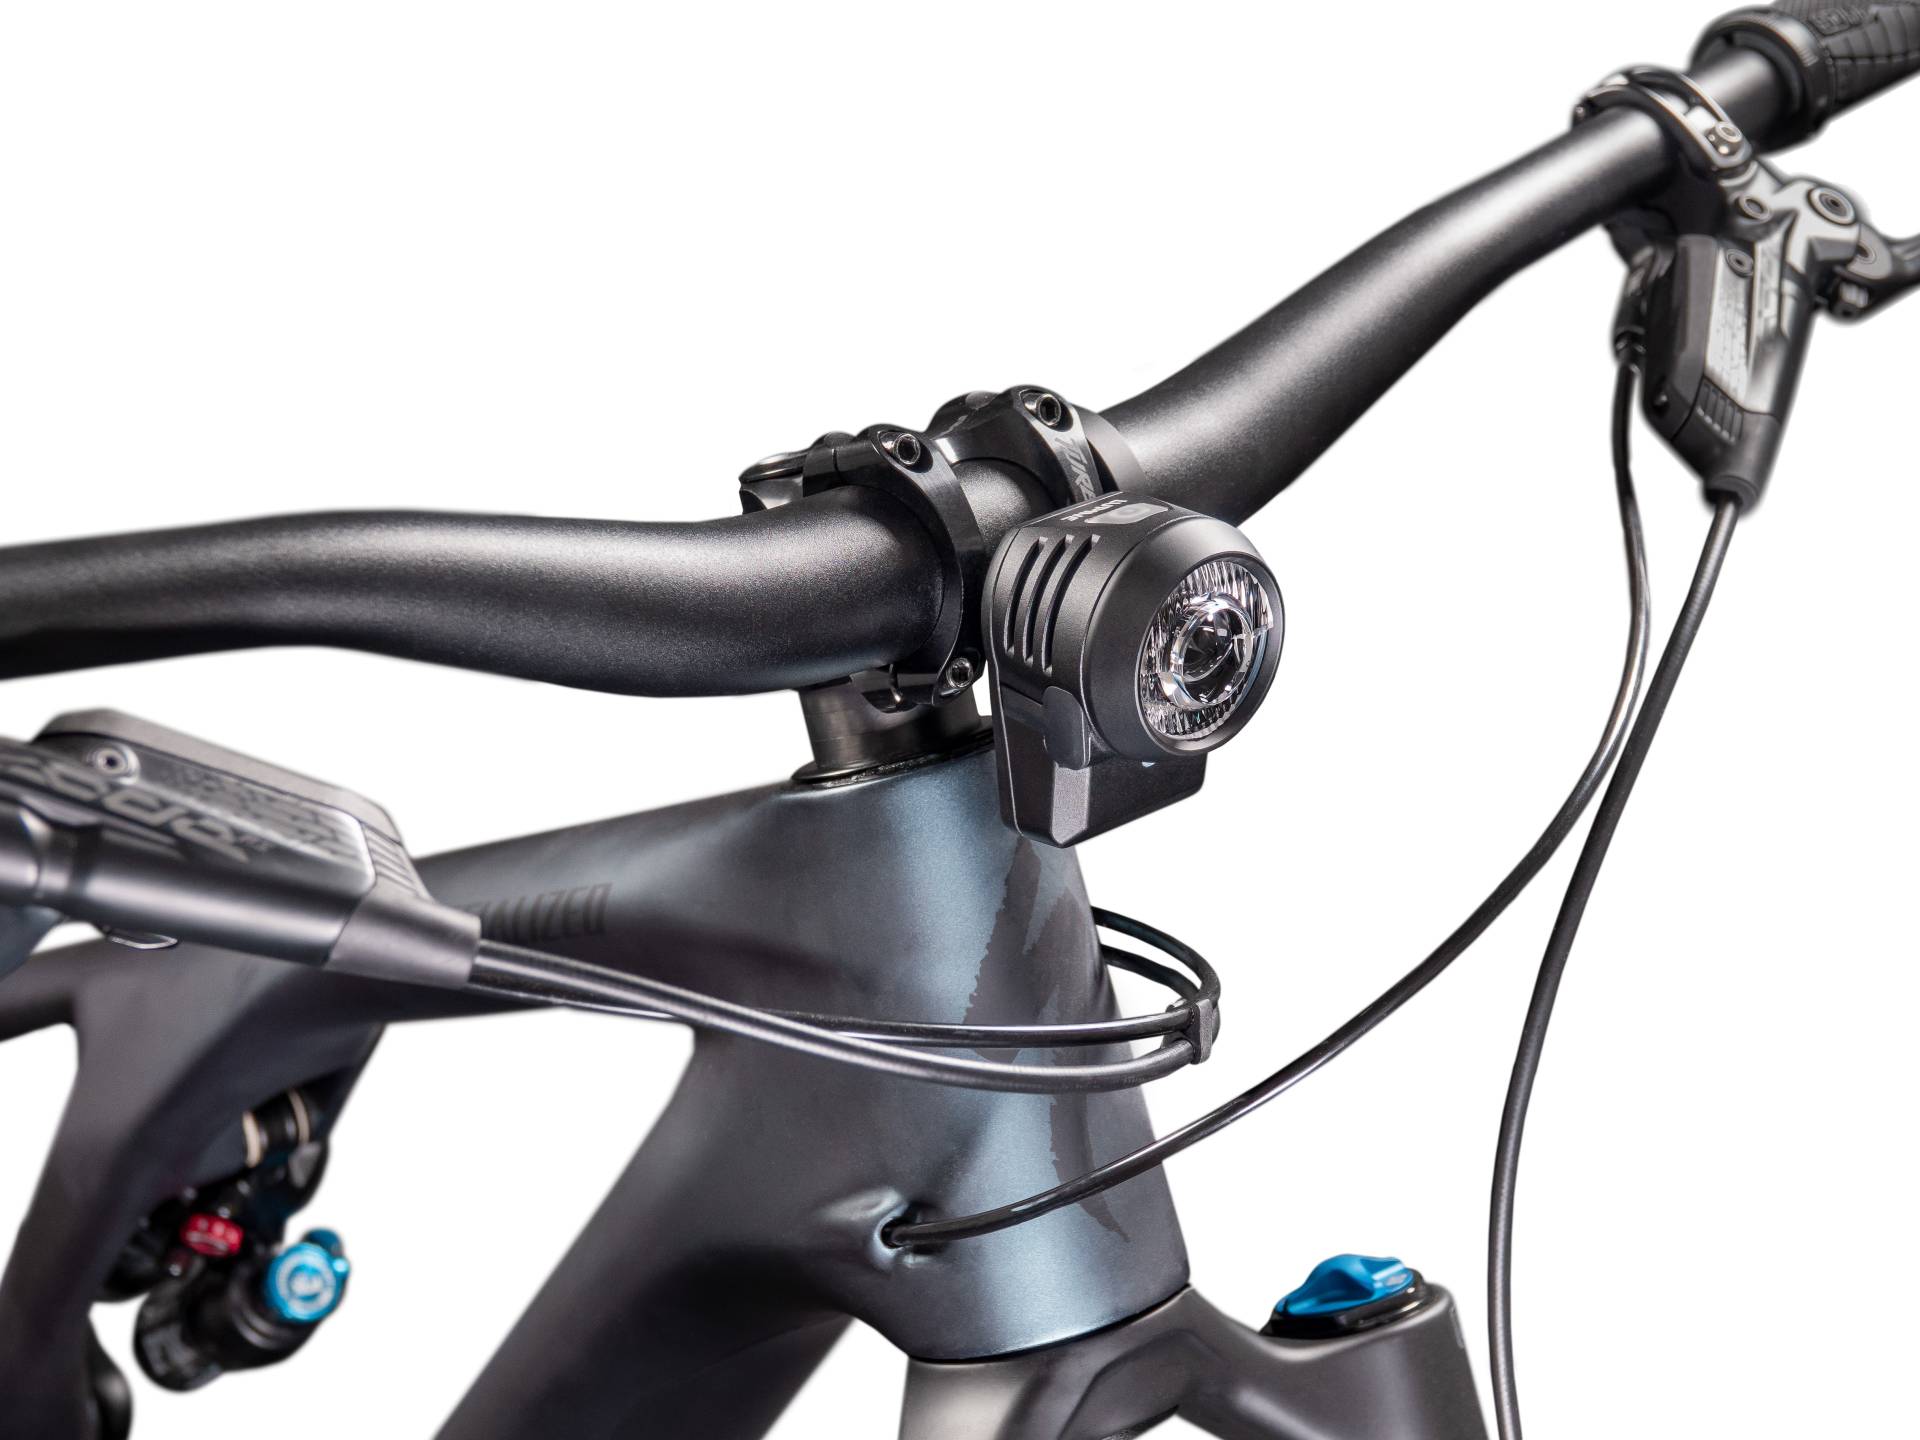 Lupine SL AF 4 LED Frontlicht mit StVZO-Zulassung - bike-components